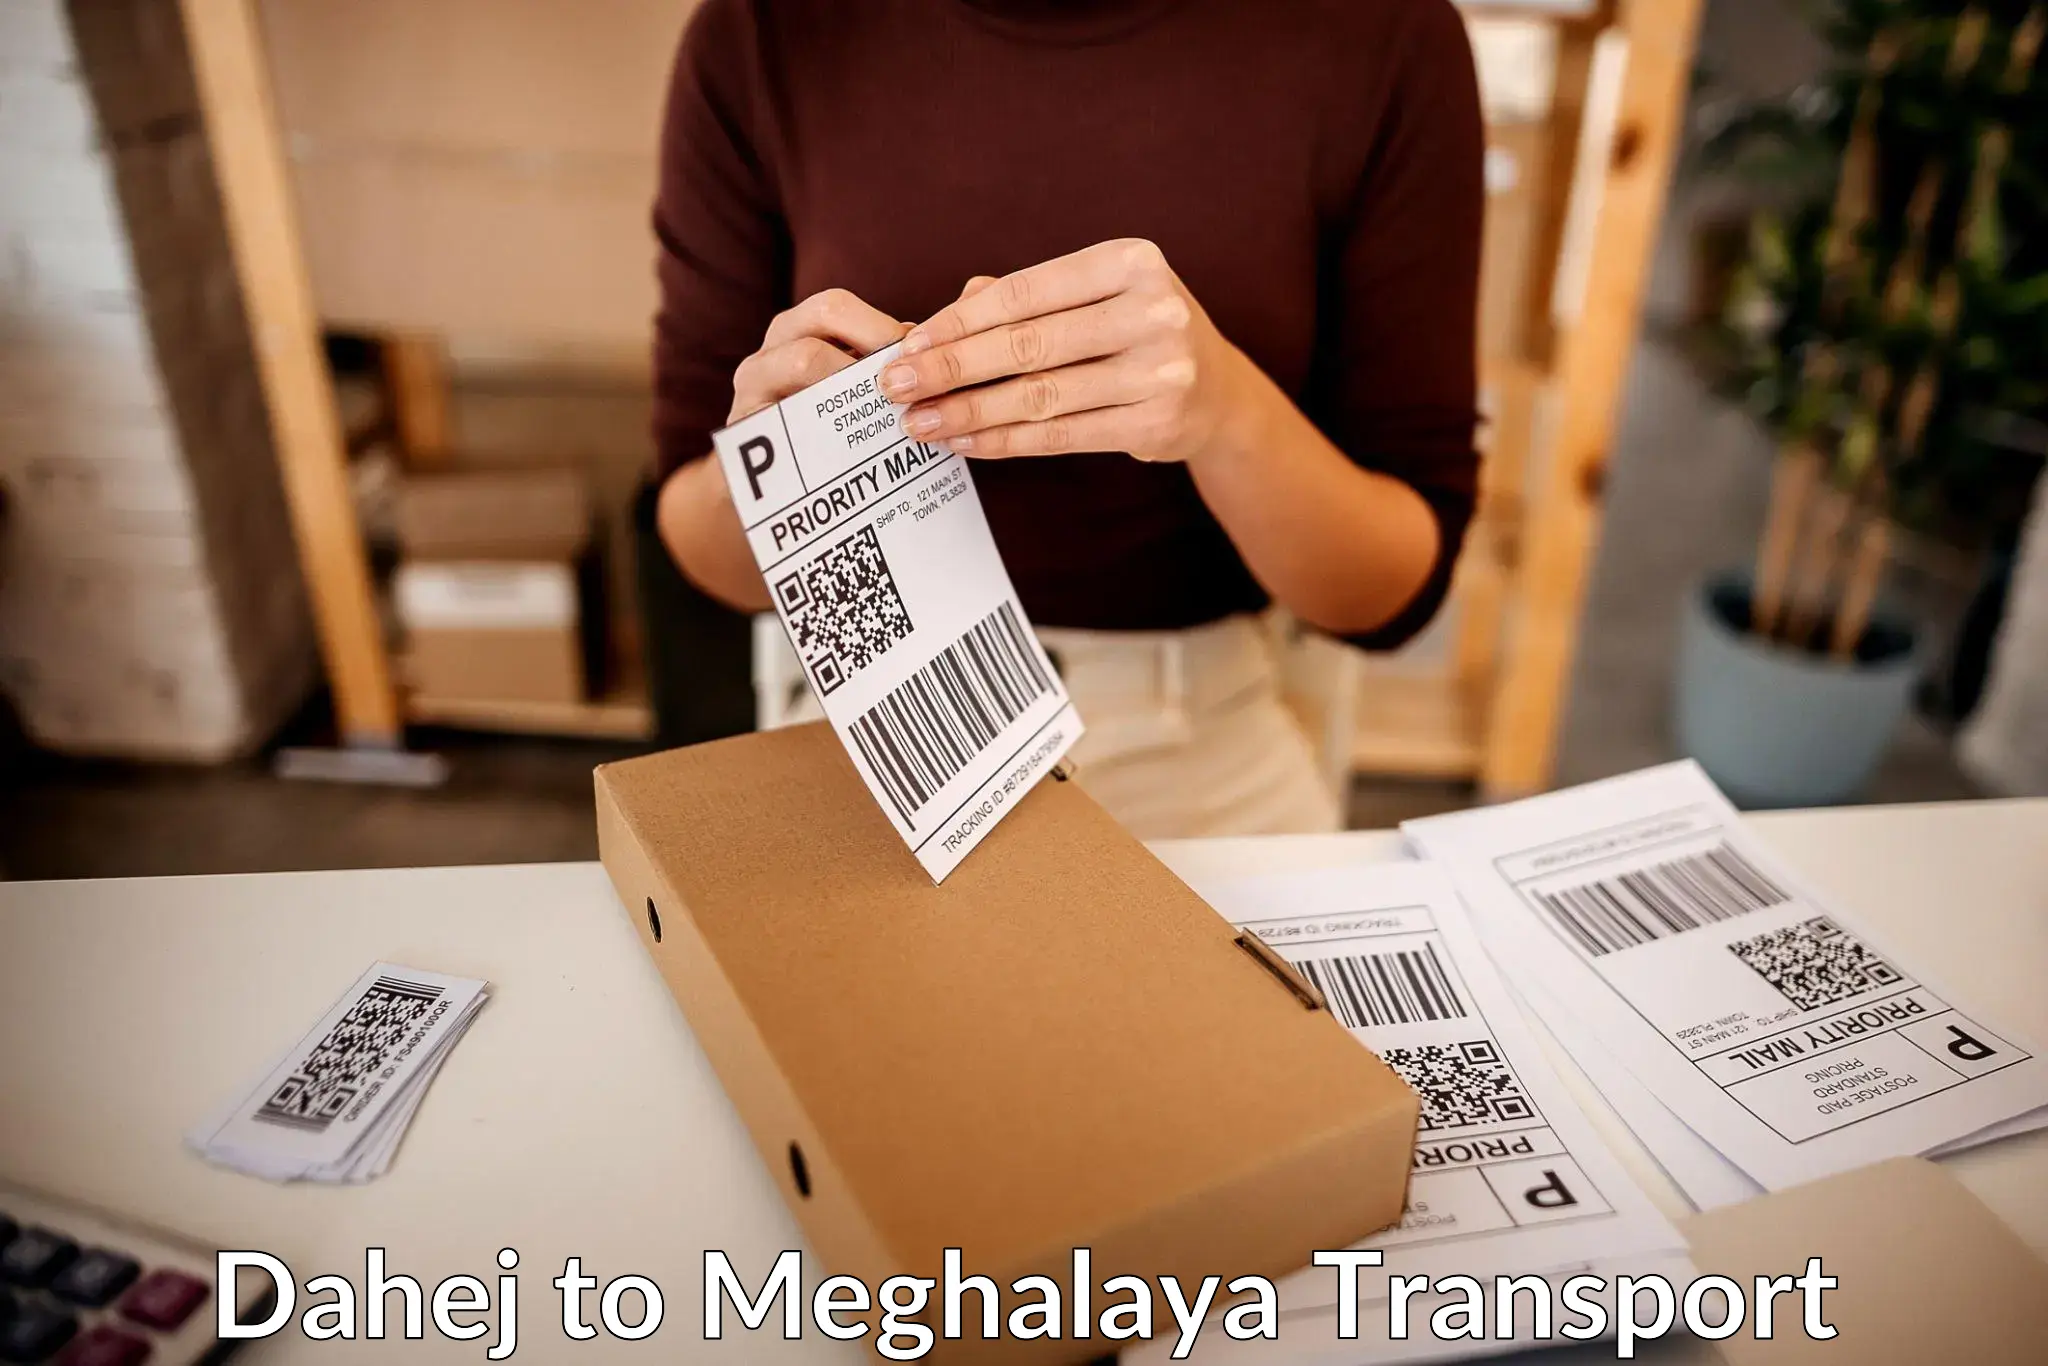 Cargo train transport services Dahej to Meghalaya